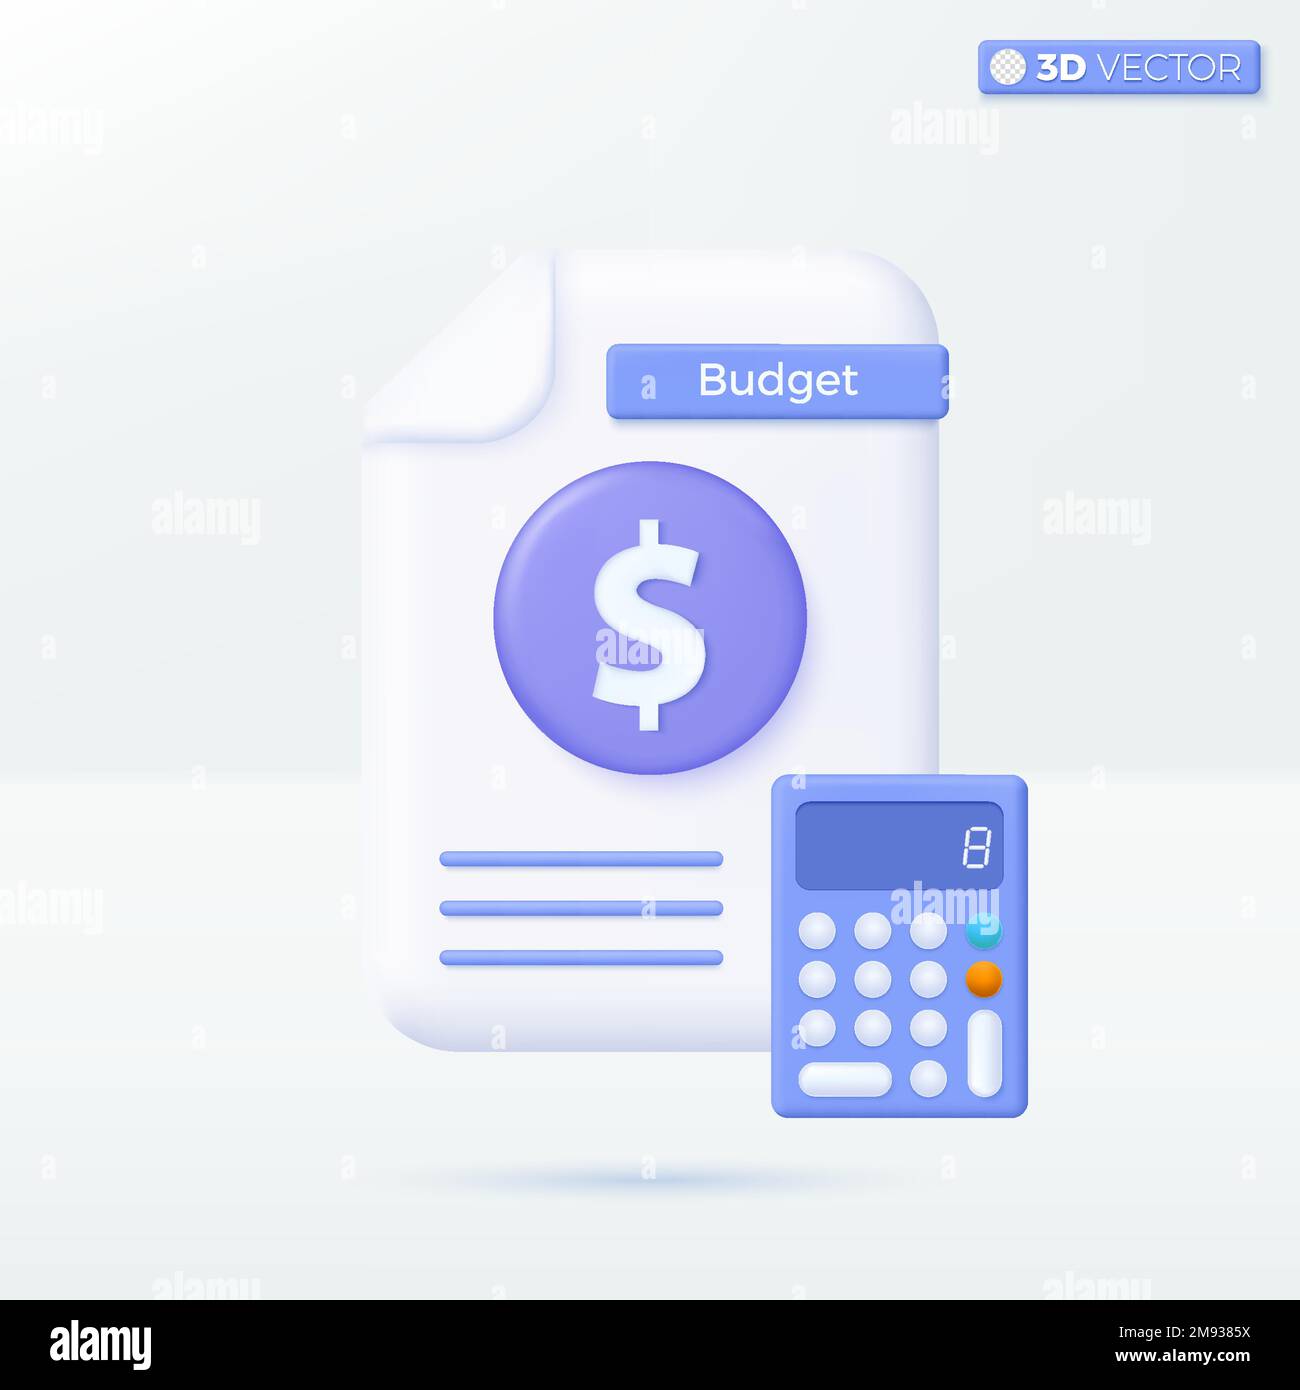 Simboli delle icone del documento e della calcolatrice in bilancio. relazione finanziaria, contabilità digitale, previsione di bilancio, concetto di relazione contabile. 3D isolato da Ilu Illustrazione Vettoriale